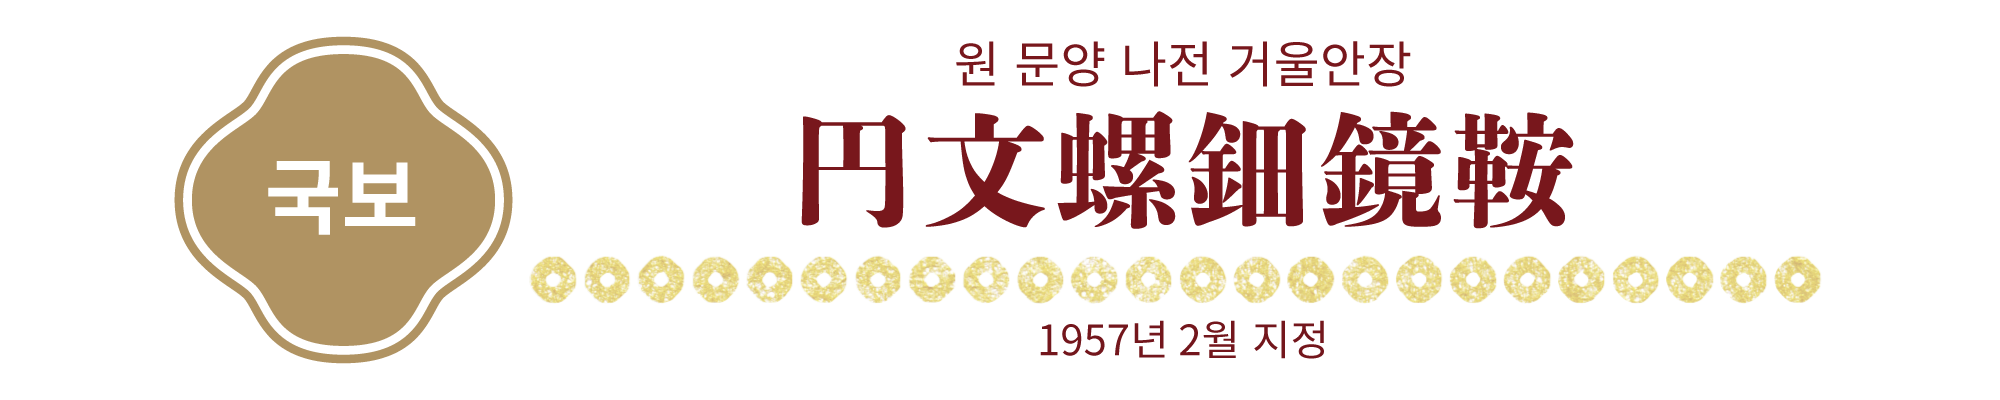 【국보】원 문양 나전 거울안장, 1957년 2월 지정